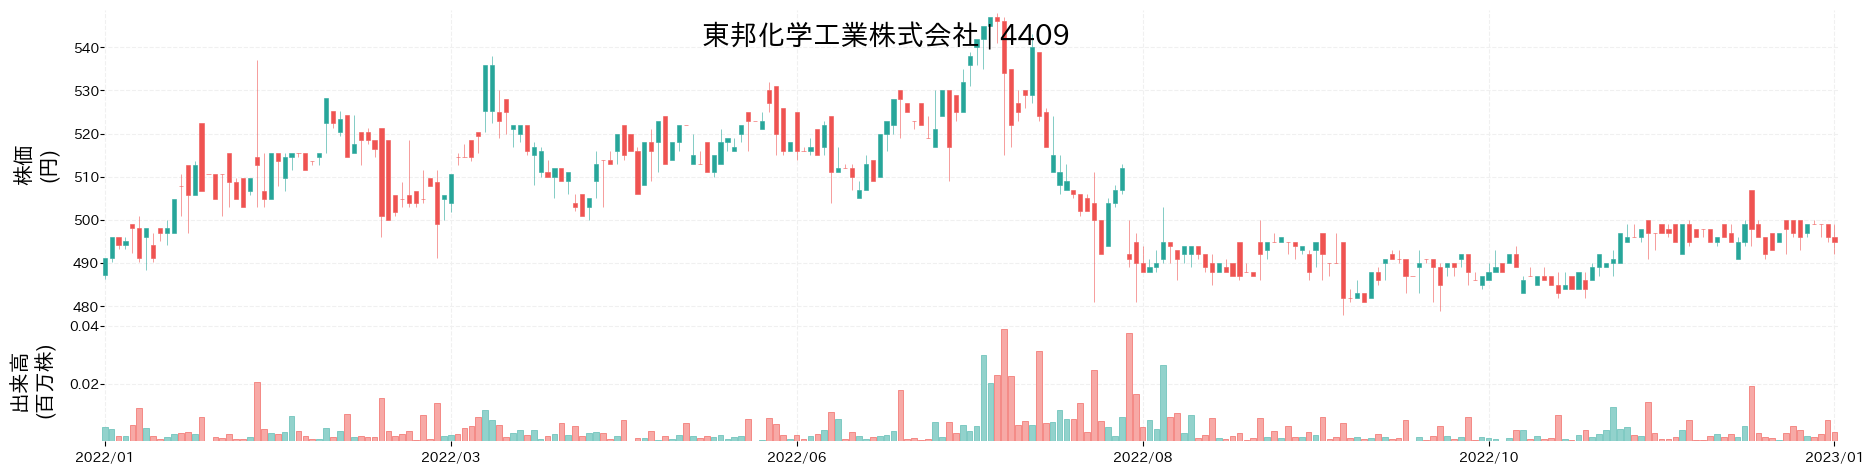 東邦化学工業の株価推移(2022)